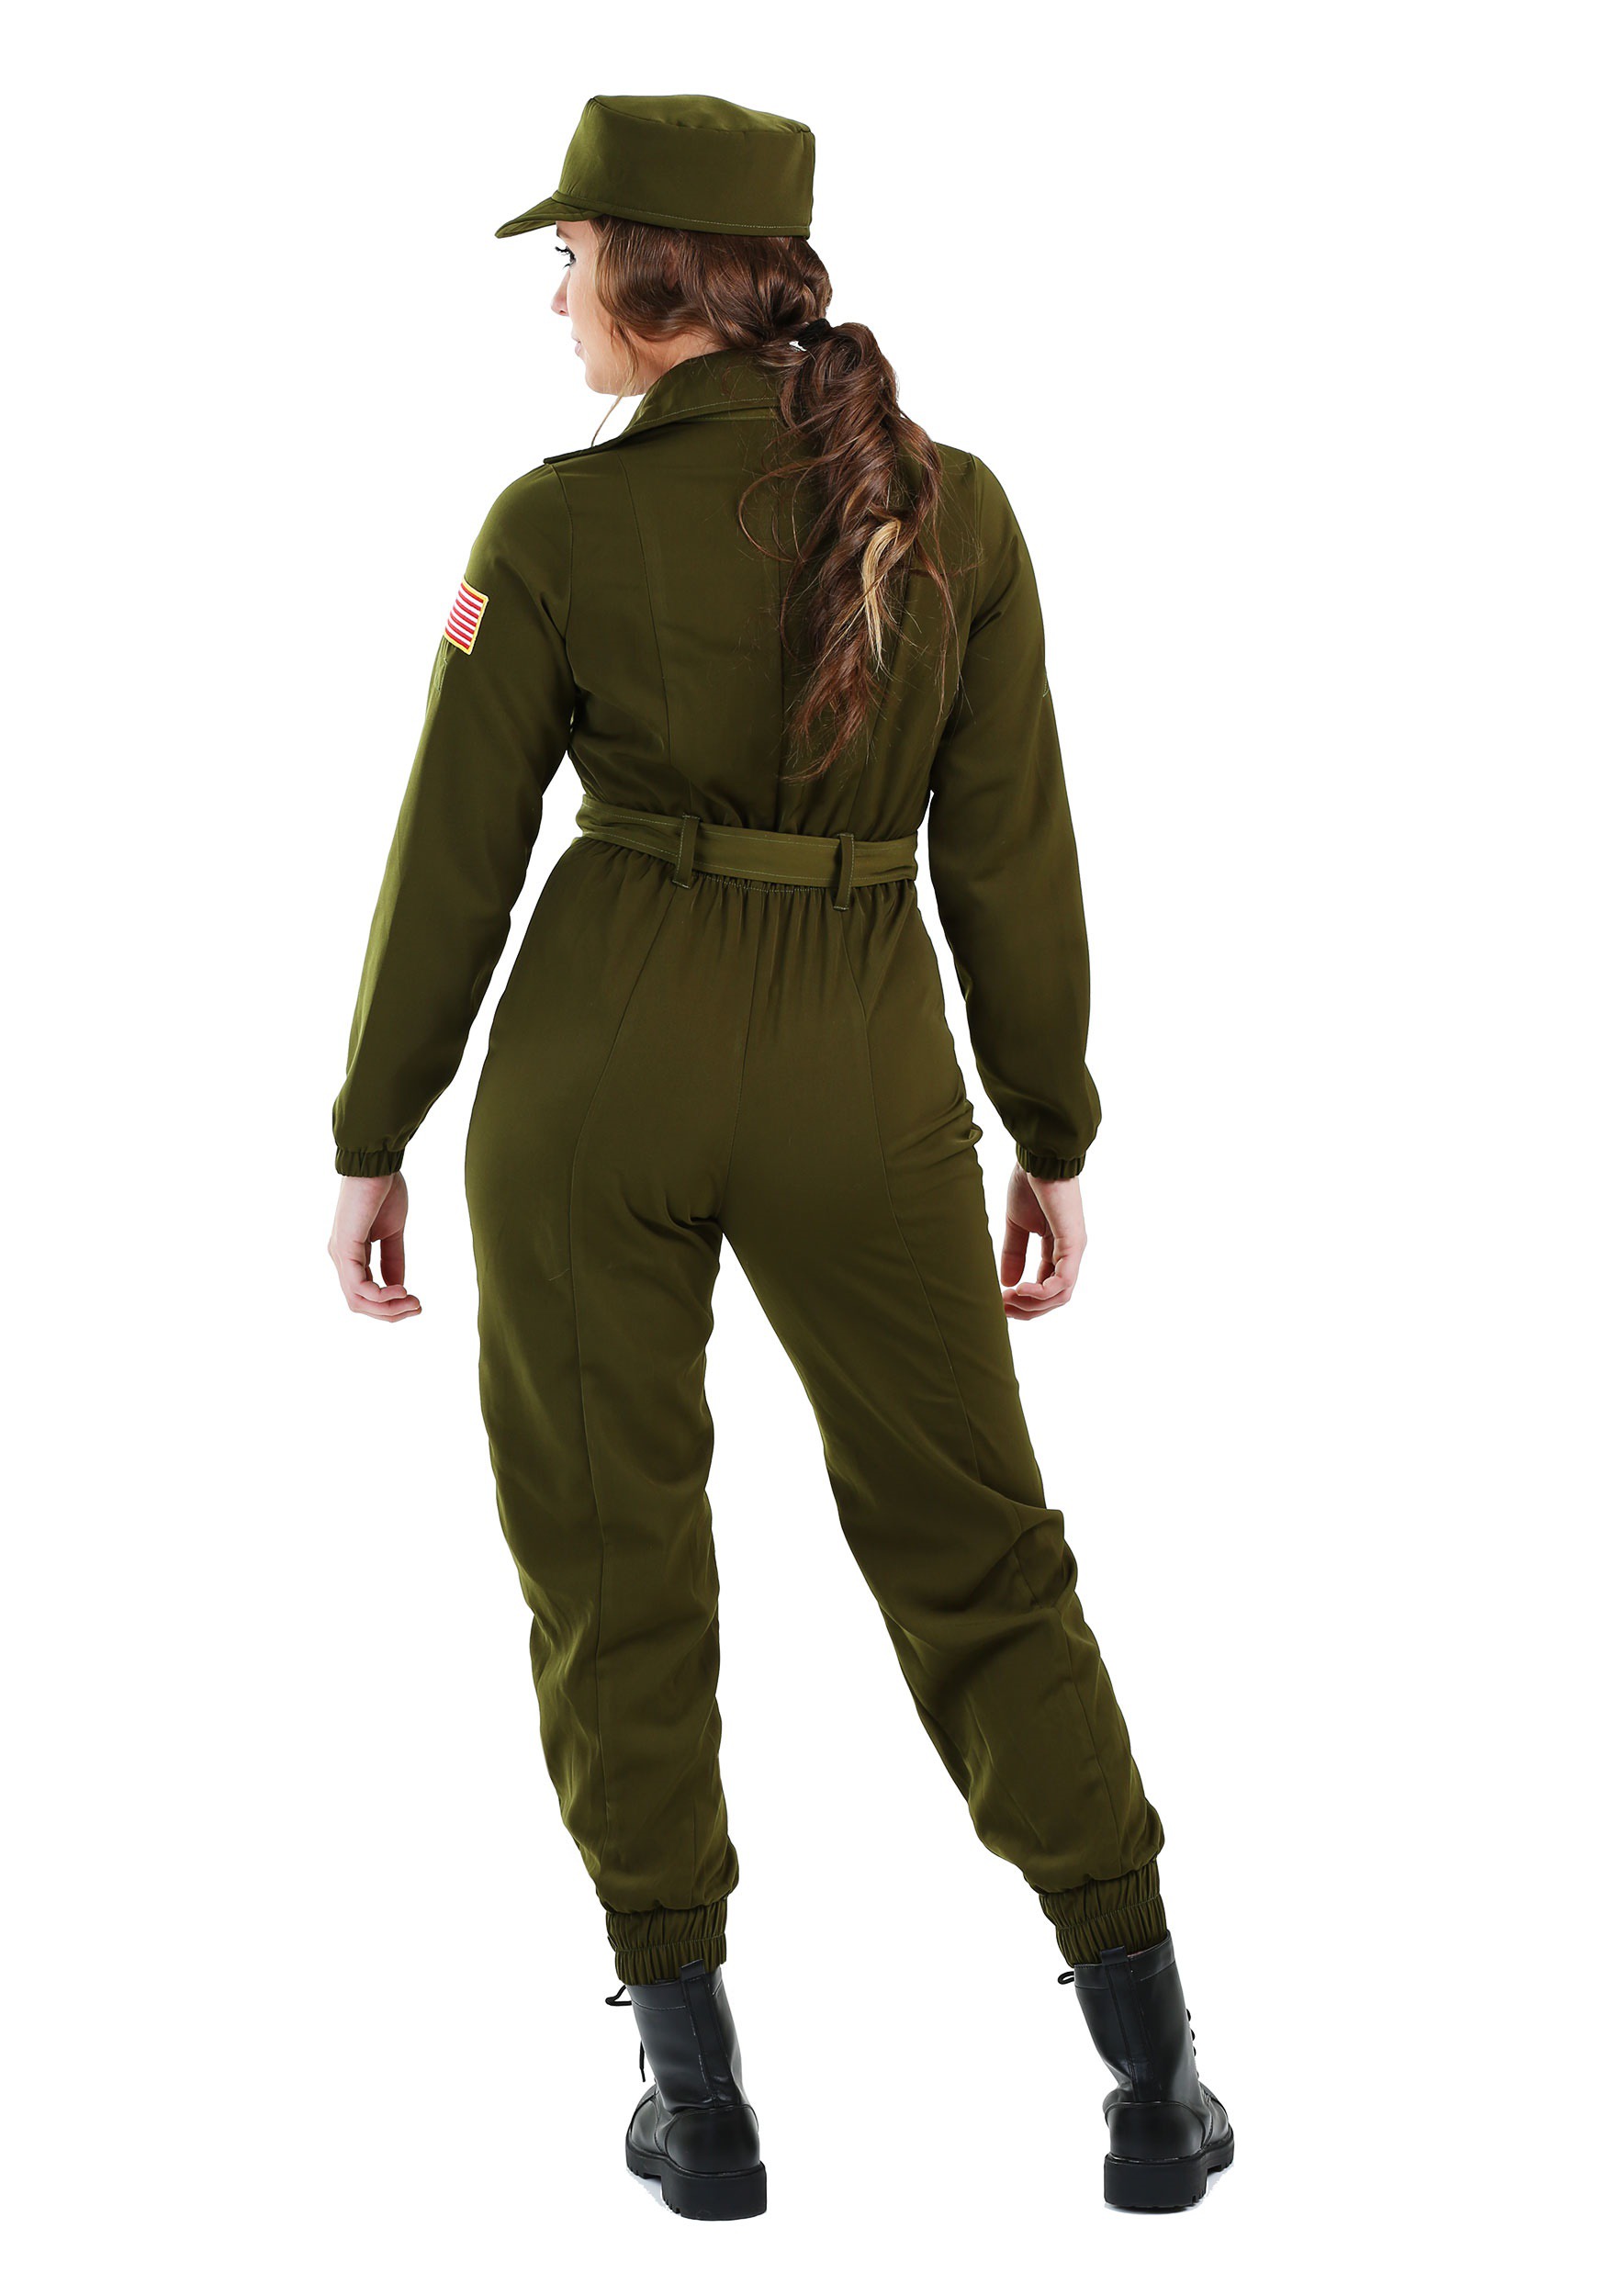 Women's Plus Size Army Flightsuit Fancy Dress Costume